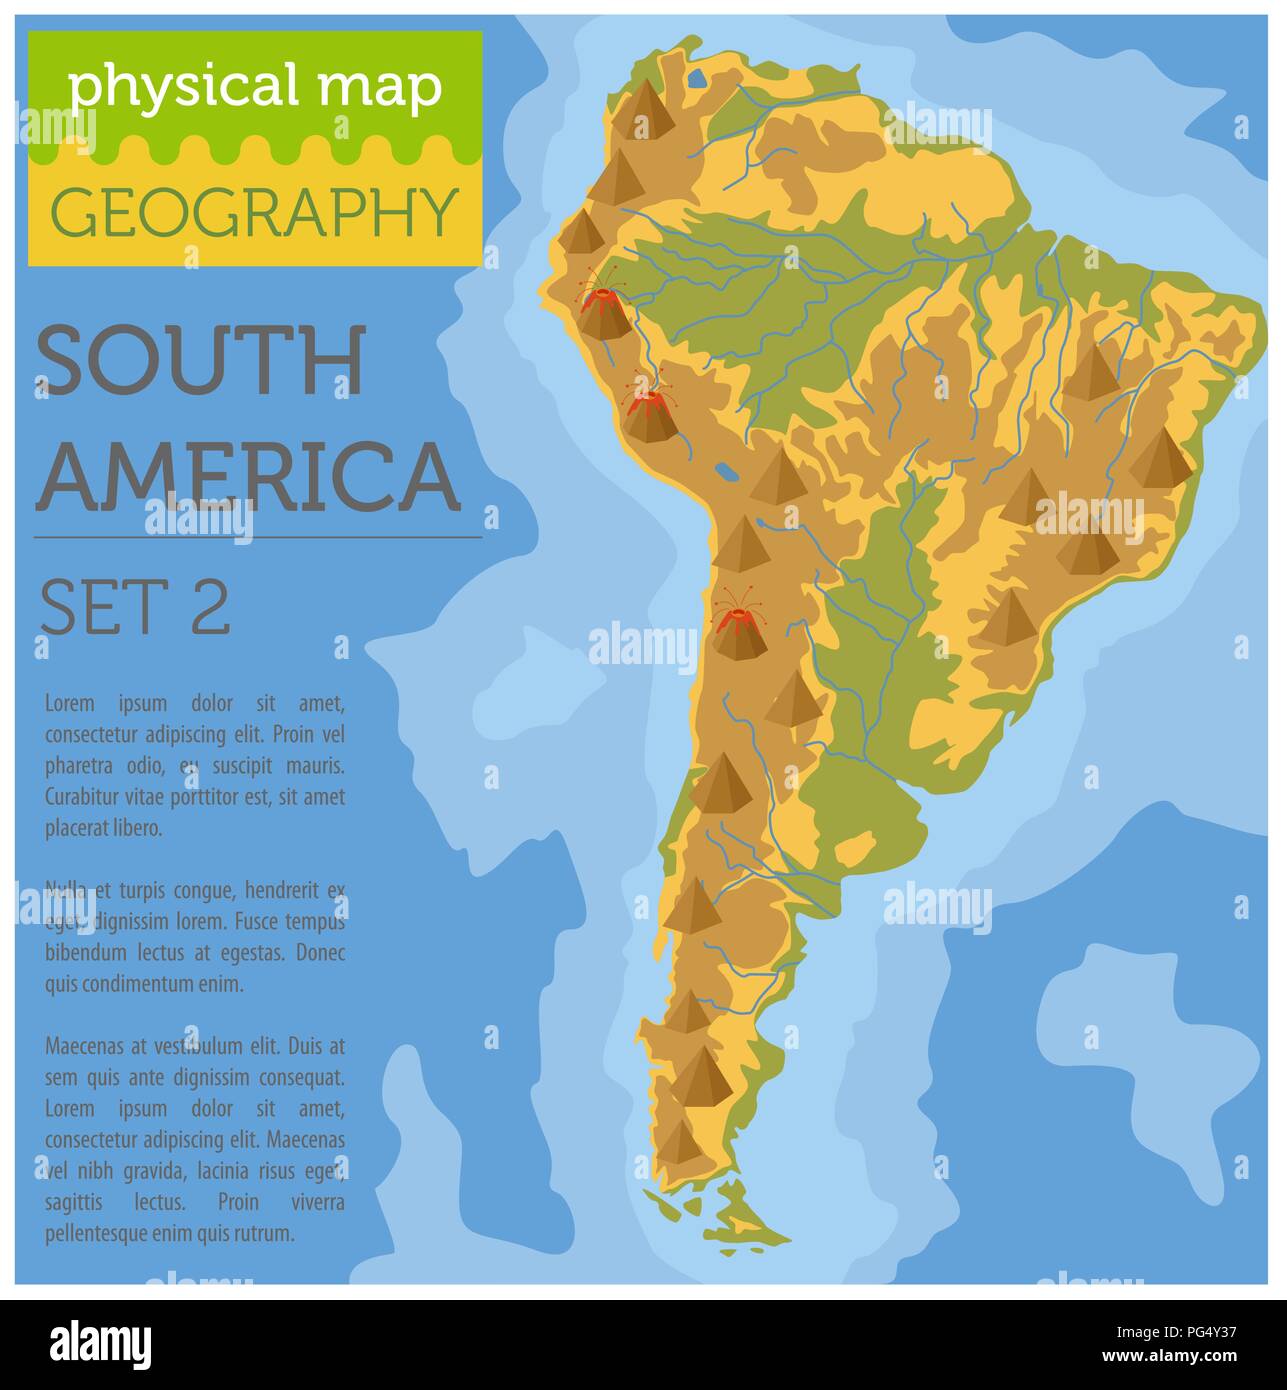 Sud America fisica degli elementi della mappa. Costruire la propria geografia info collezione grafica. Illustrazione Vettoriale Illustrazione Vettoriale